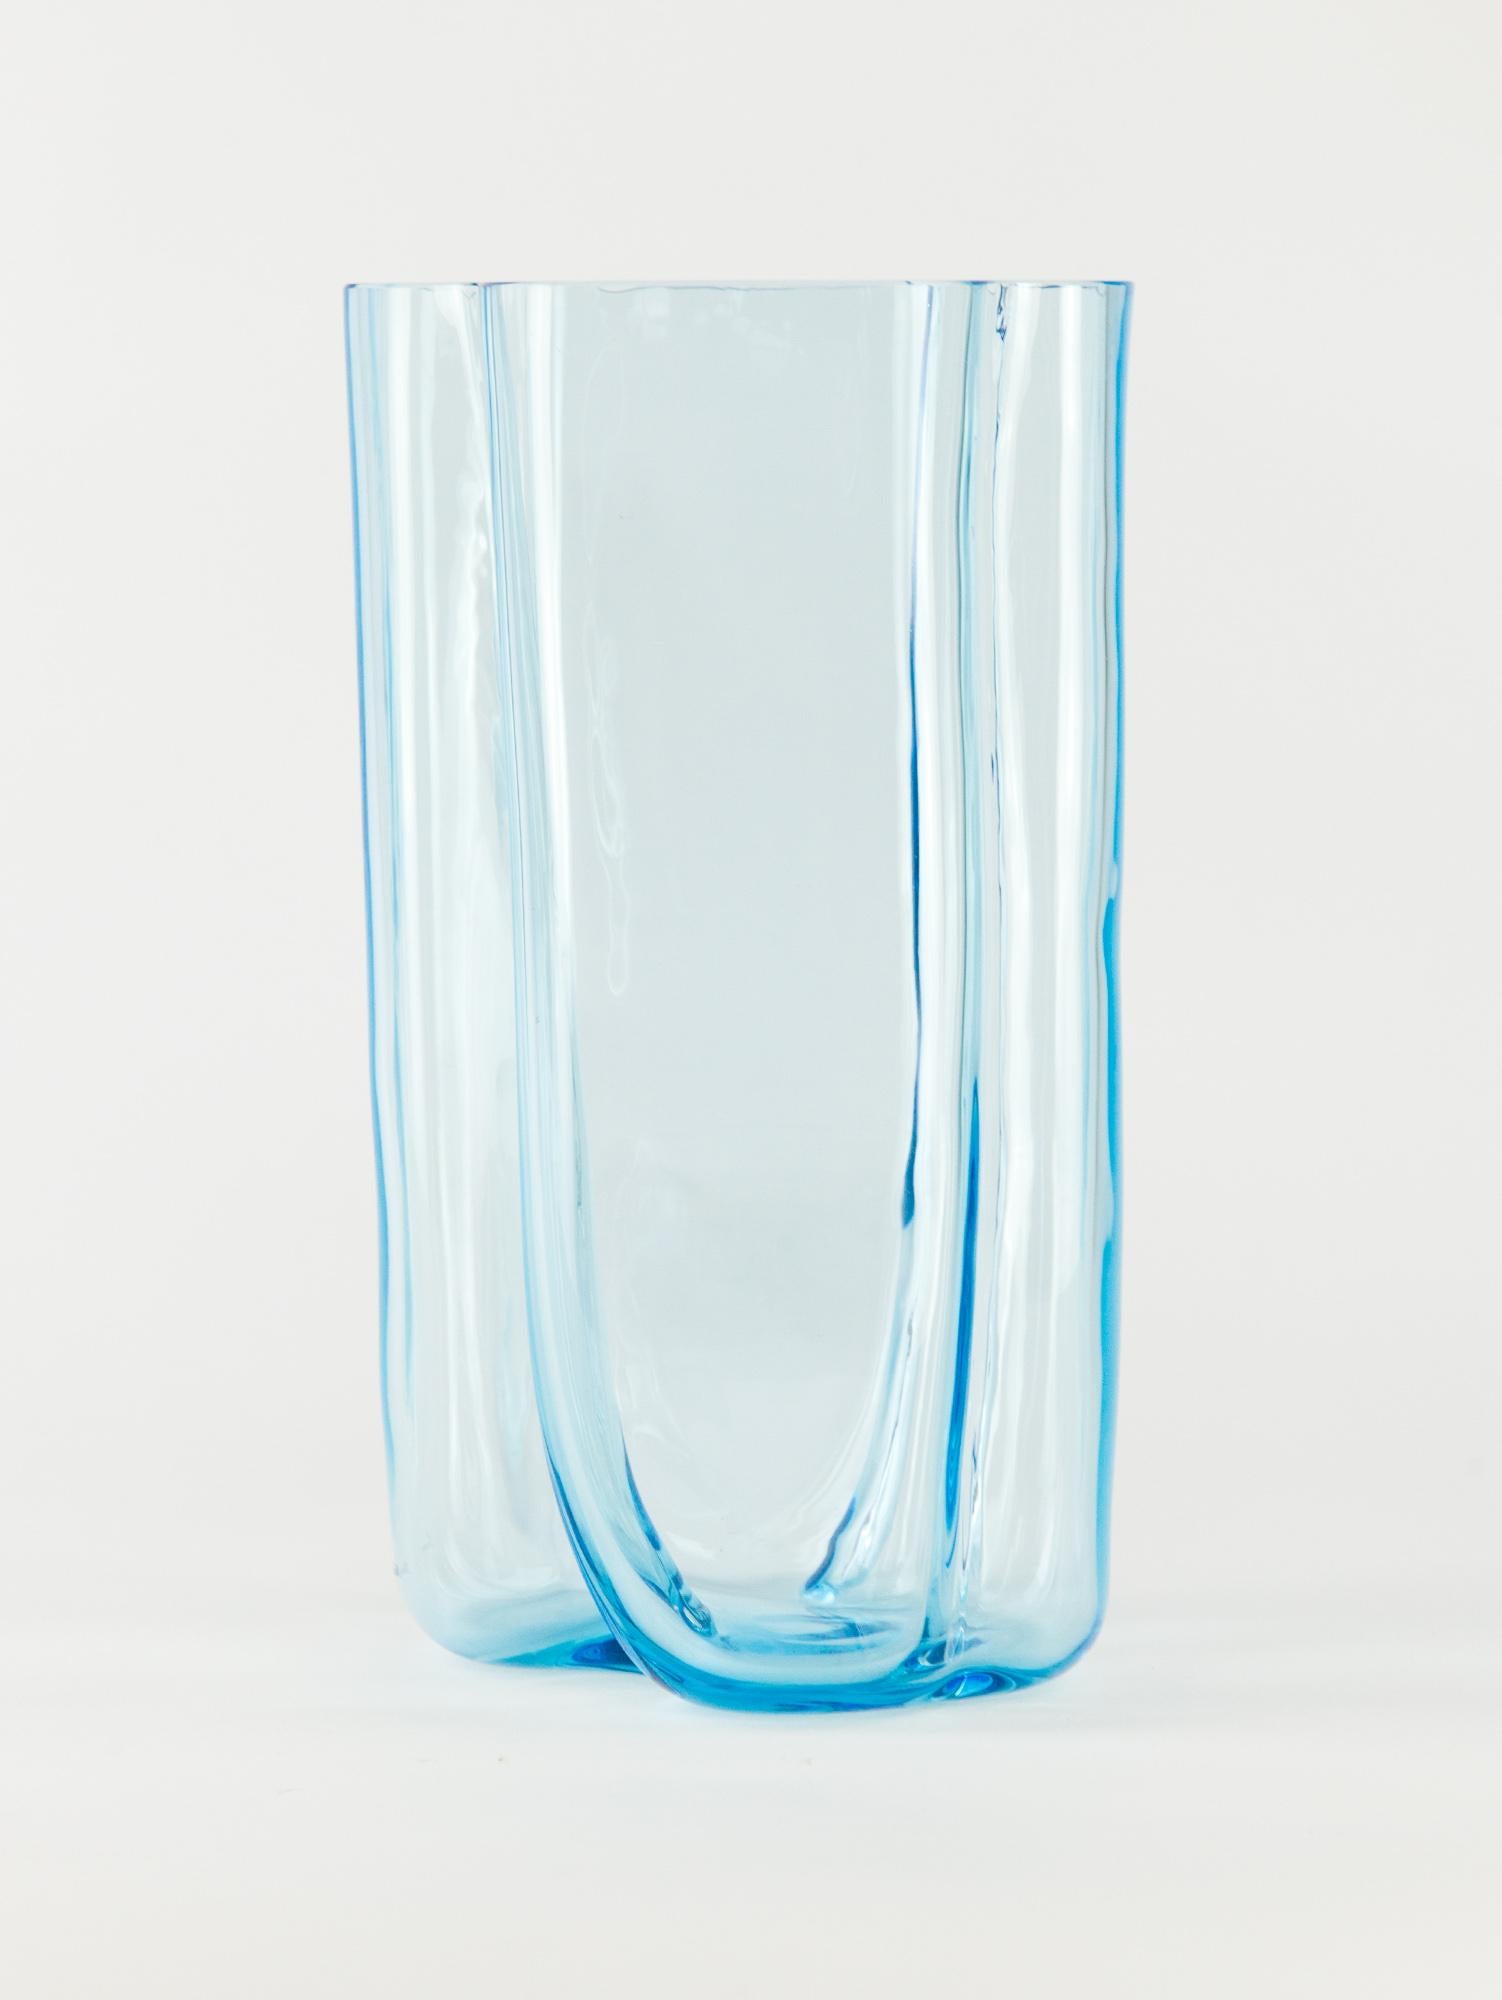 Grand vase vintage de Murano par Cenedese & Albarelli. La forme sculpturale volumineuse s'exprime à travers le verre bleu cristallin de Murano. La base arrondie et douce est équilibrée par la forme géométrique angulaire au sommet du vase. Fabriqué